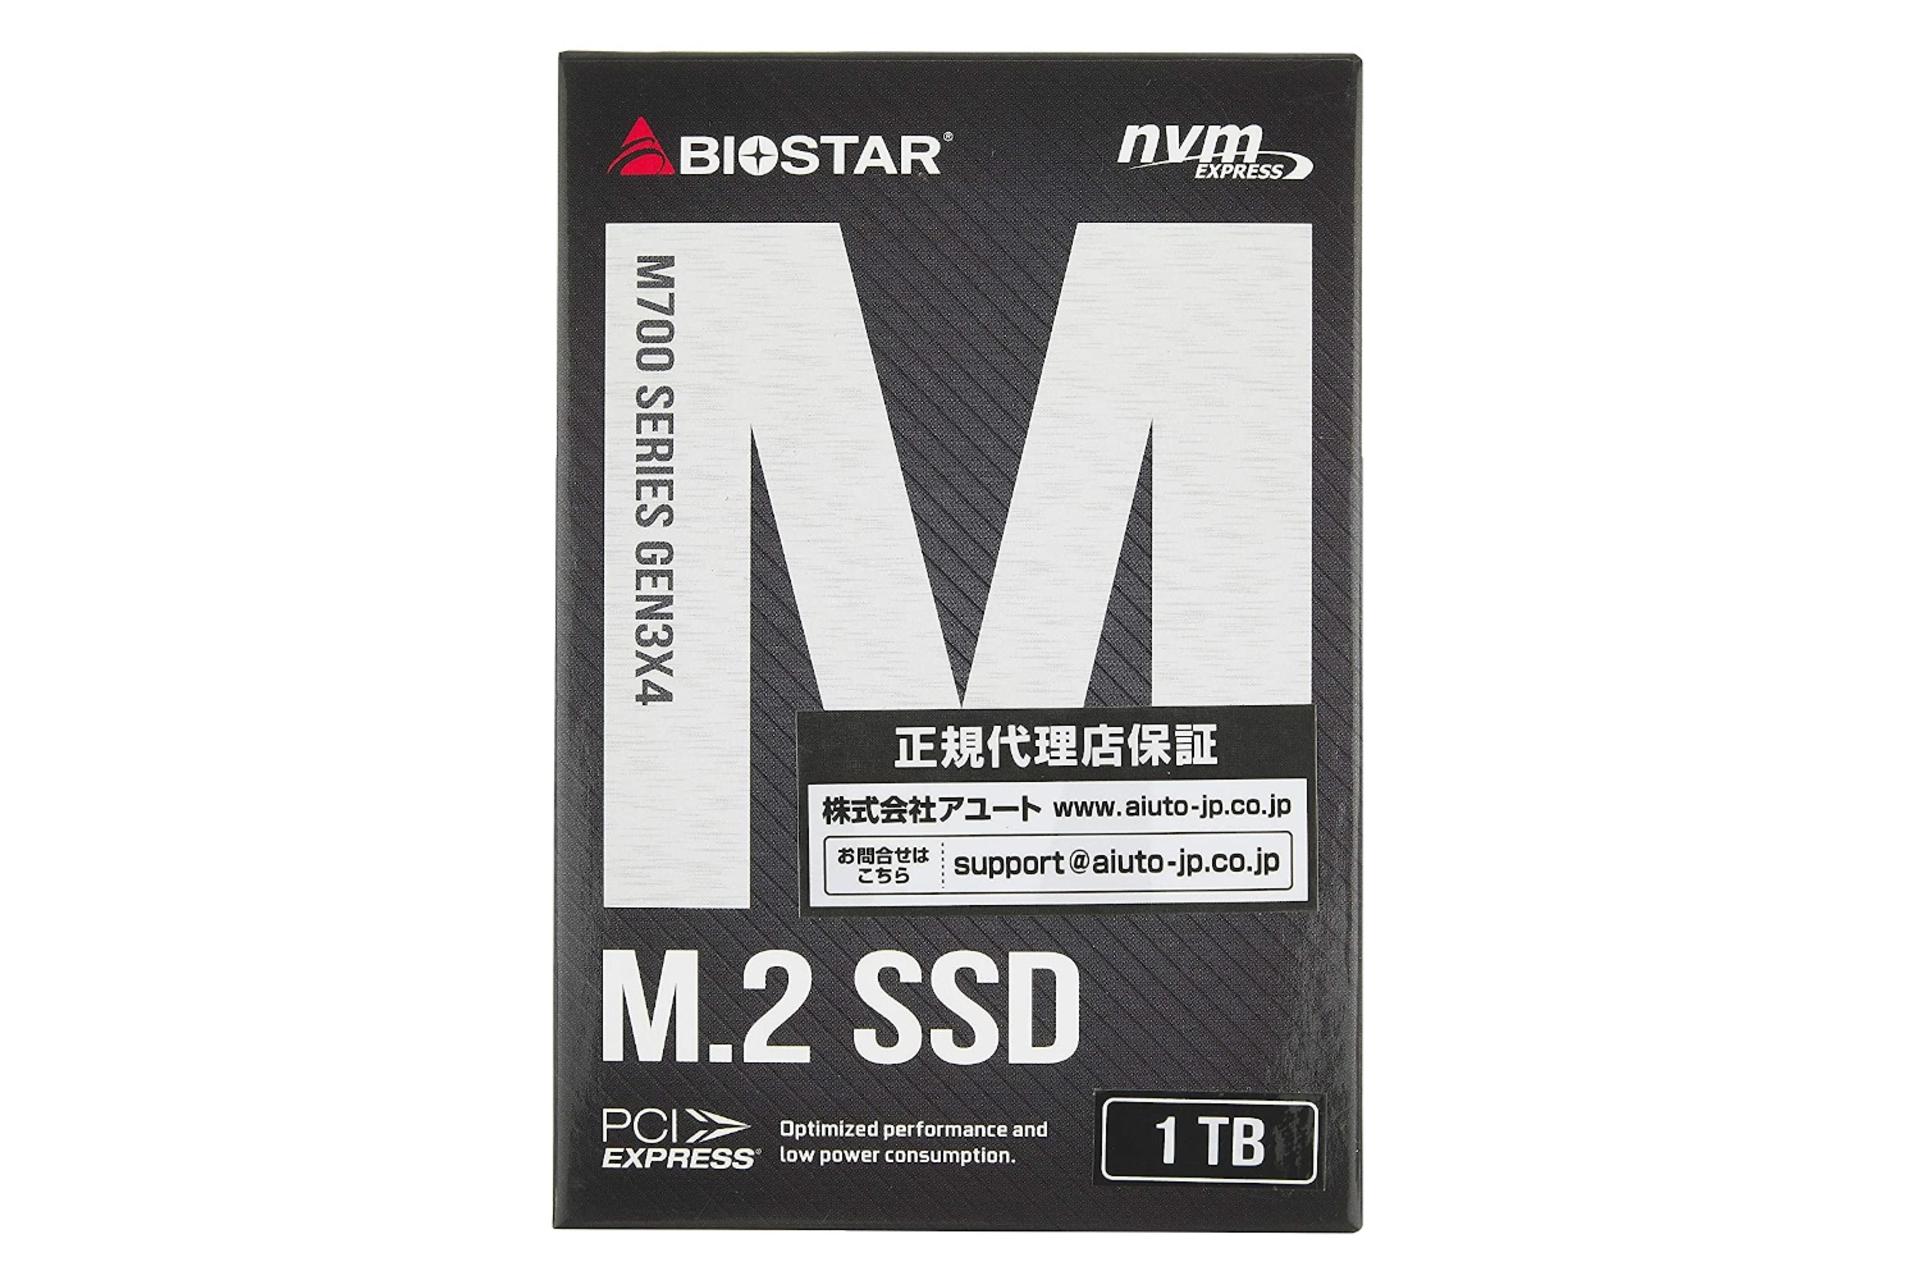 جعبه SSD بایوستار Biostar M700 NVMe M.2 1TB ظرفیت 1 ترابایت